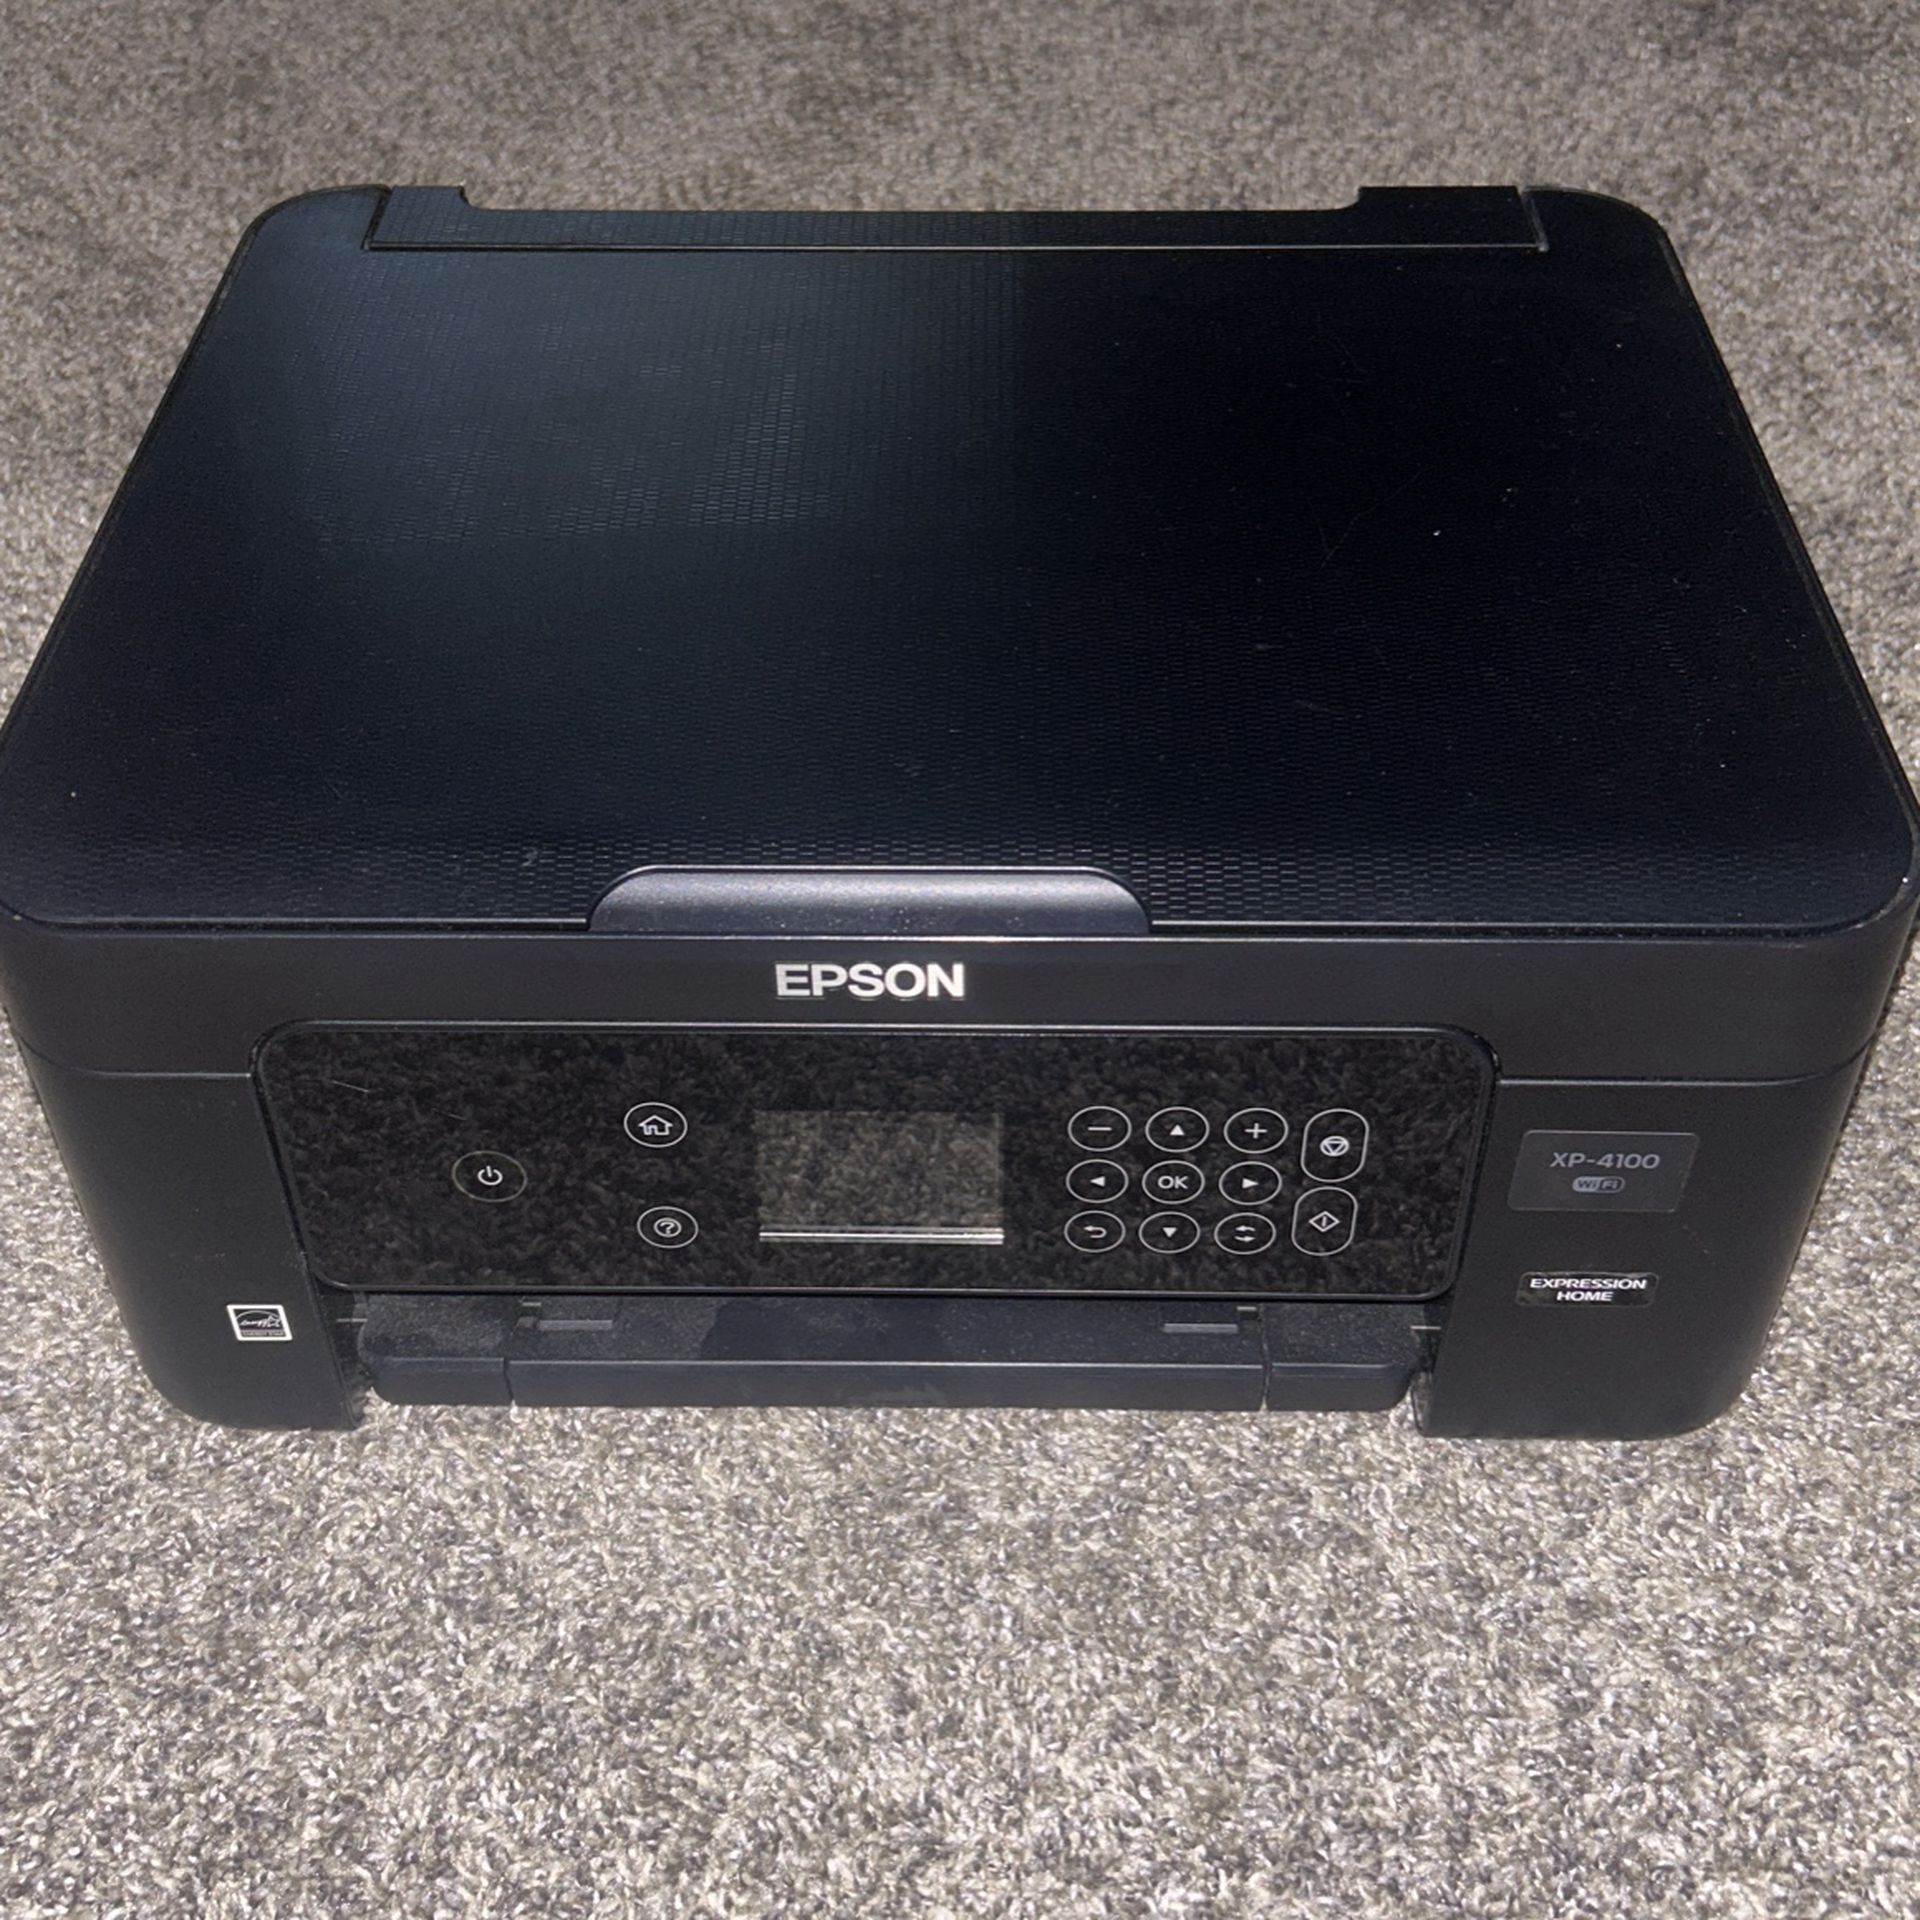 XP-4100 Epson Printer